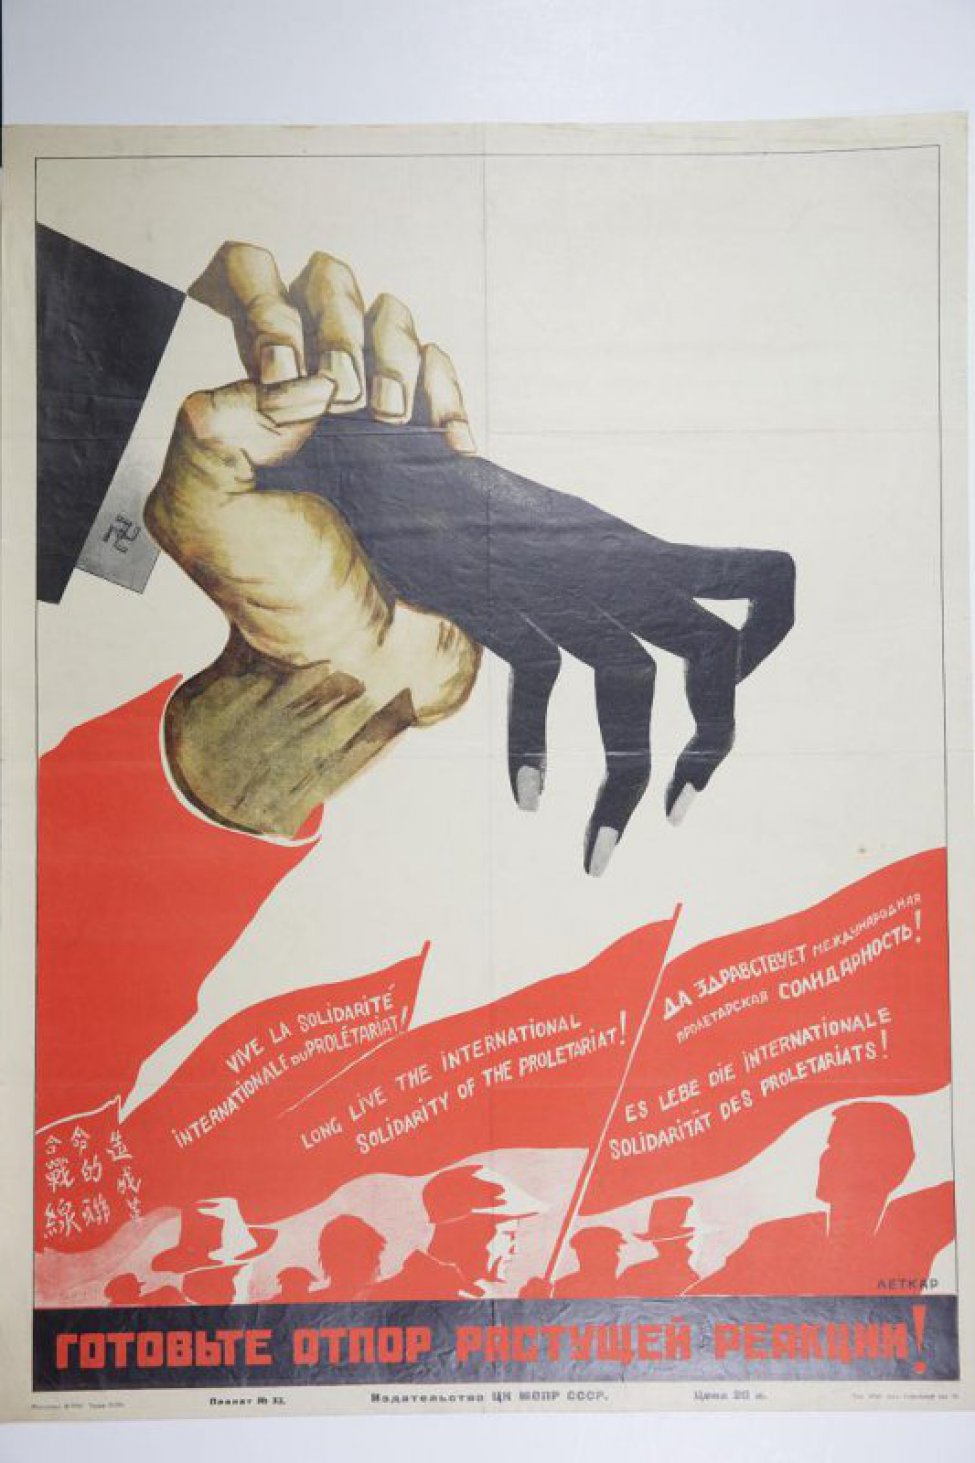 Изображена мускулистая рука рабочего, сжимающая чёрную руку фашиста. Внизу силуэты людей со знамёнами. На одном из них, справа надпись - "Да здравствует международная пролетарская солидарность!" Остальные на иностранных языках.